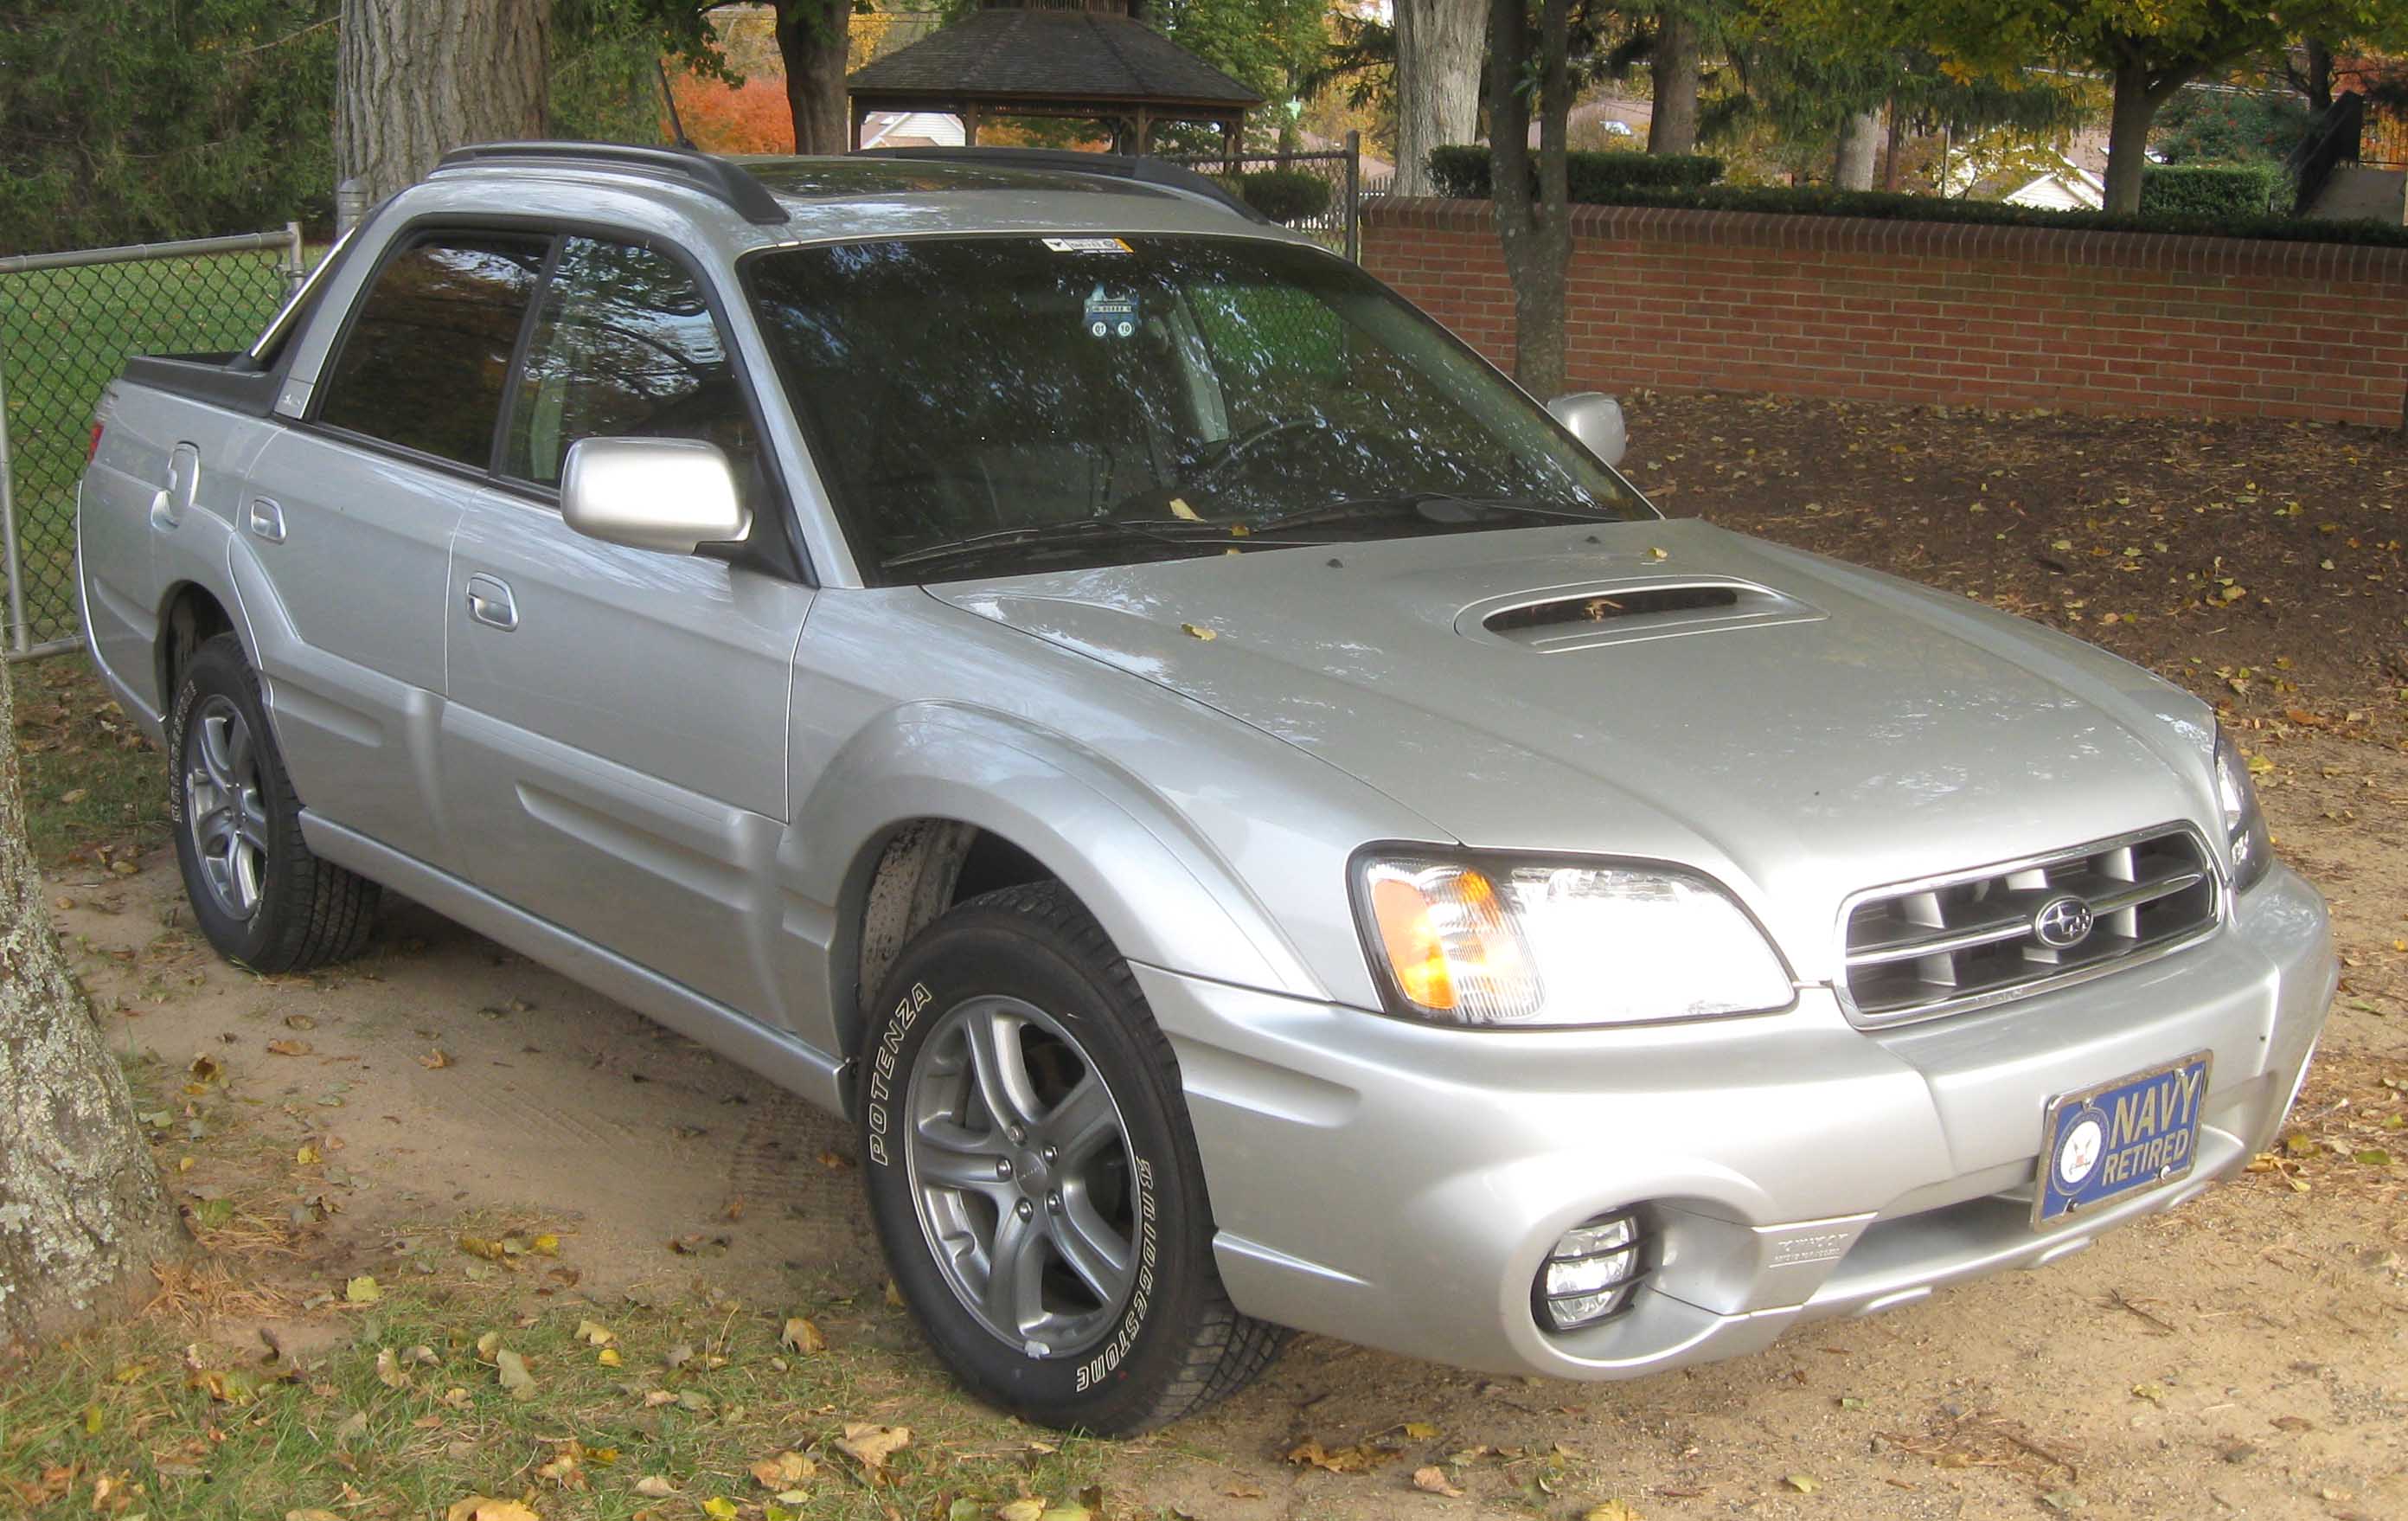 File:Subaru Baja Turbo.jpg - Wikipedia